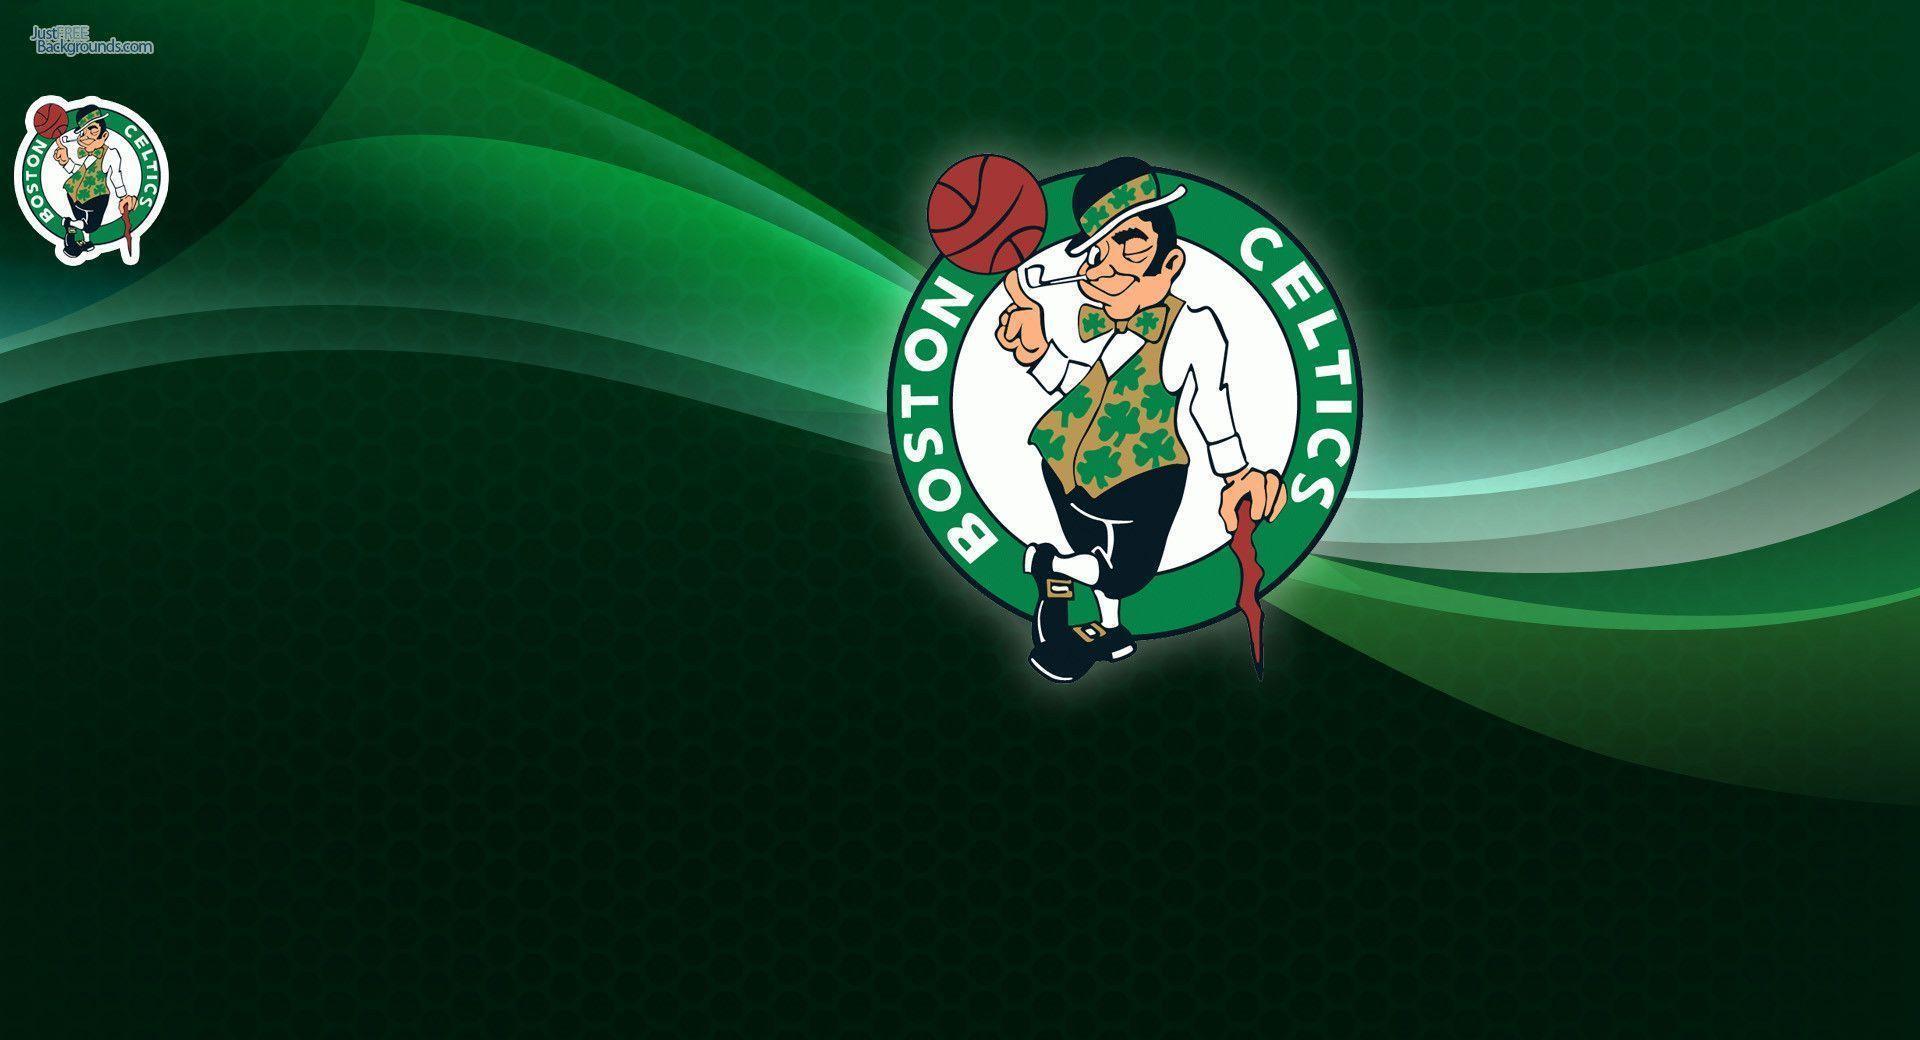 Celtics Wallpapers - Wallpaper Cave